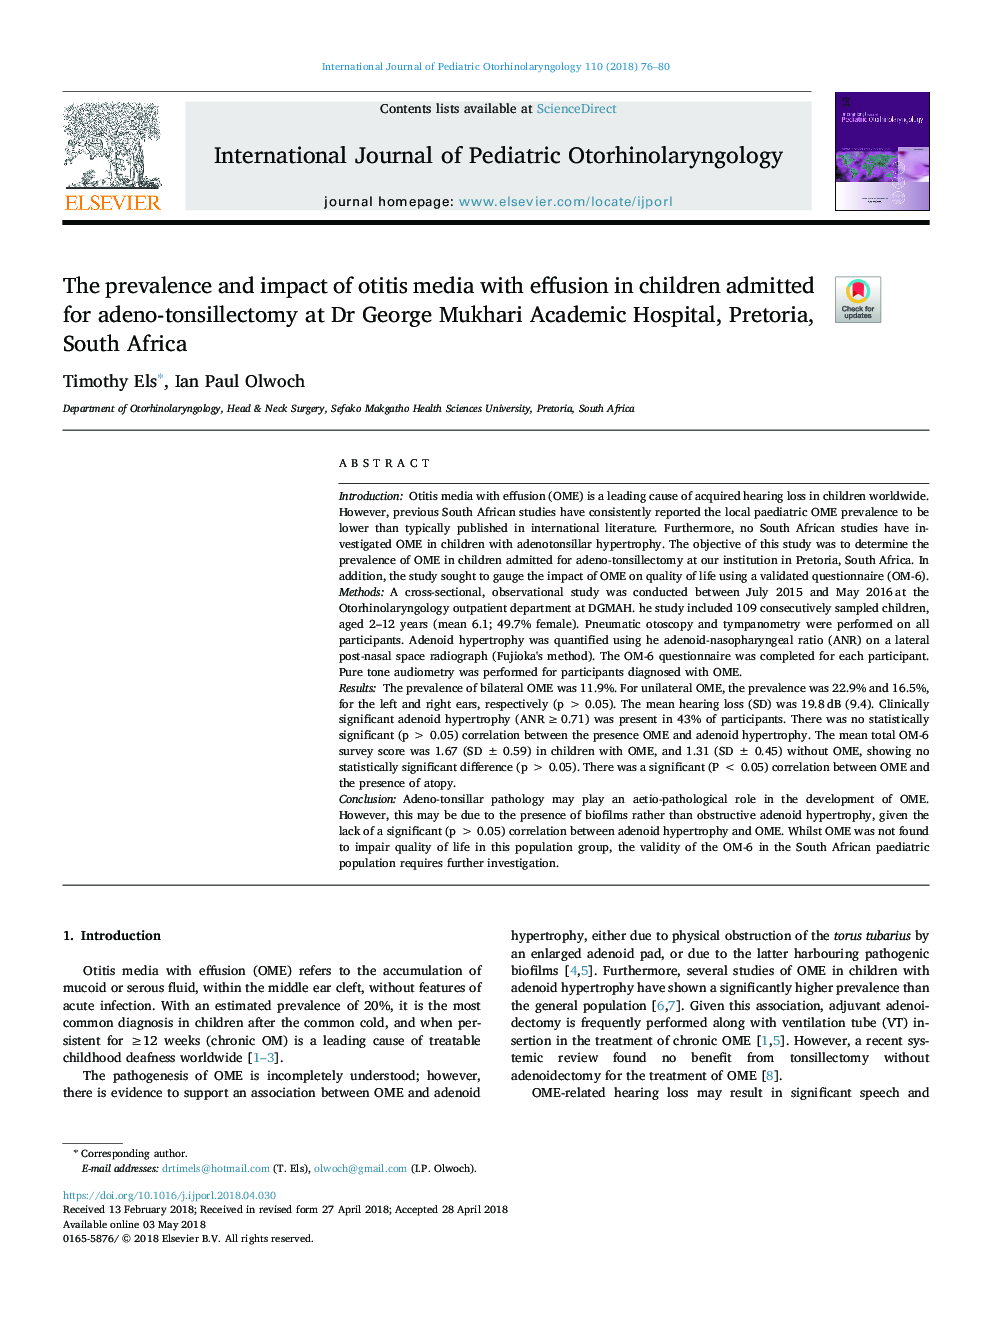 شیوع و تاثیر رسانه عفونت با افیوژن در کودکان مبتلا به آدنوونسیلکتومی در دانشکده پزشکی دکتر جورج موخاری، پرتوریا، جنوب افریقا 